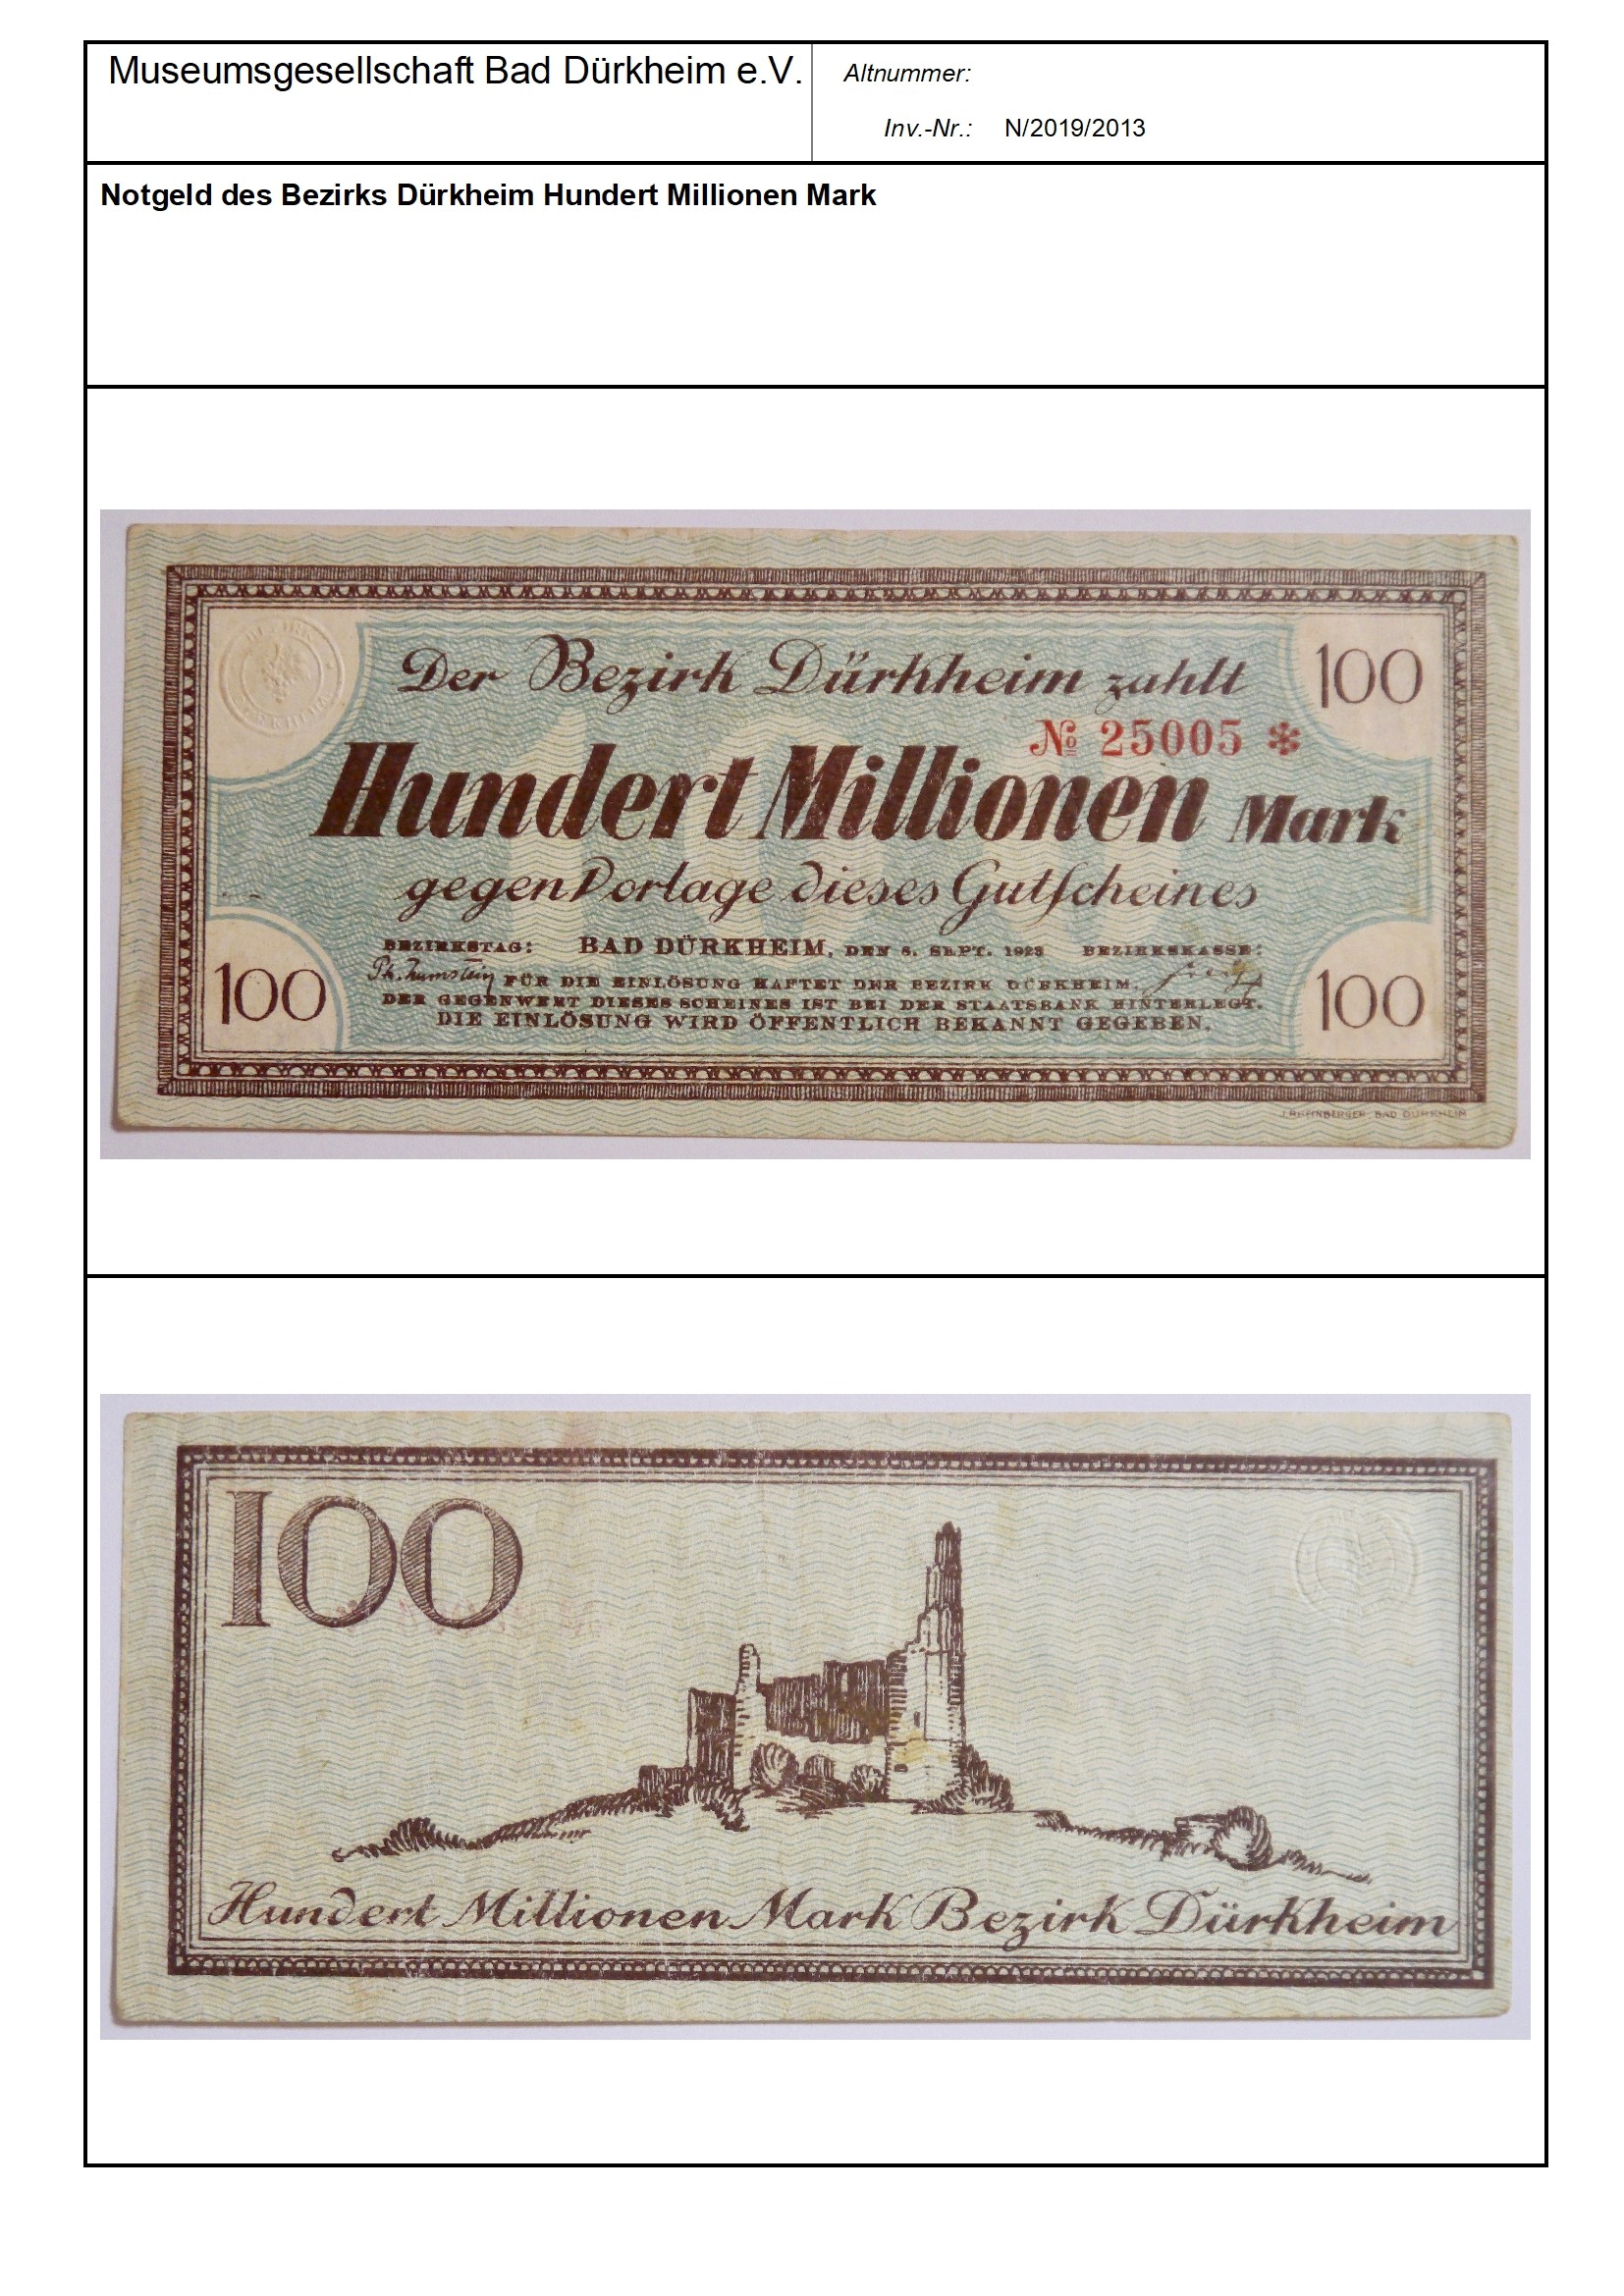 Notgeld des Bezirks Dürkheim Hundert Millionen Mark
Serien-Nummer: No 25005* (Museumsgesellschaft Bad Dürkheim e.V. CC BY-NC-SA)